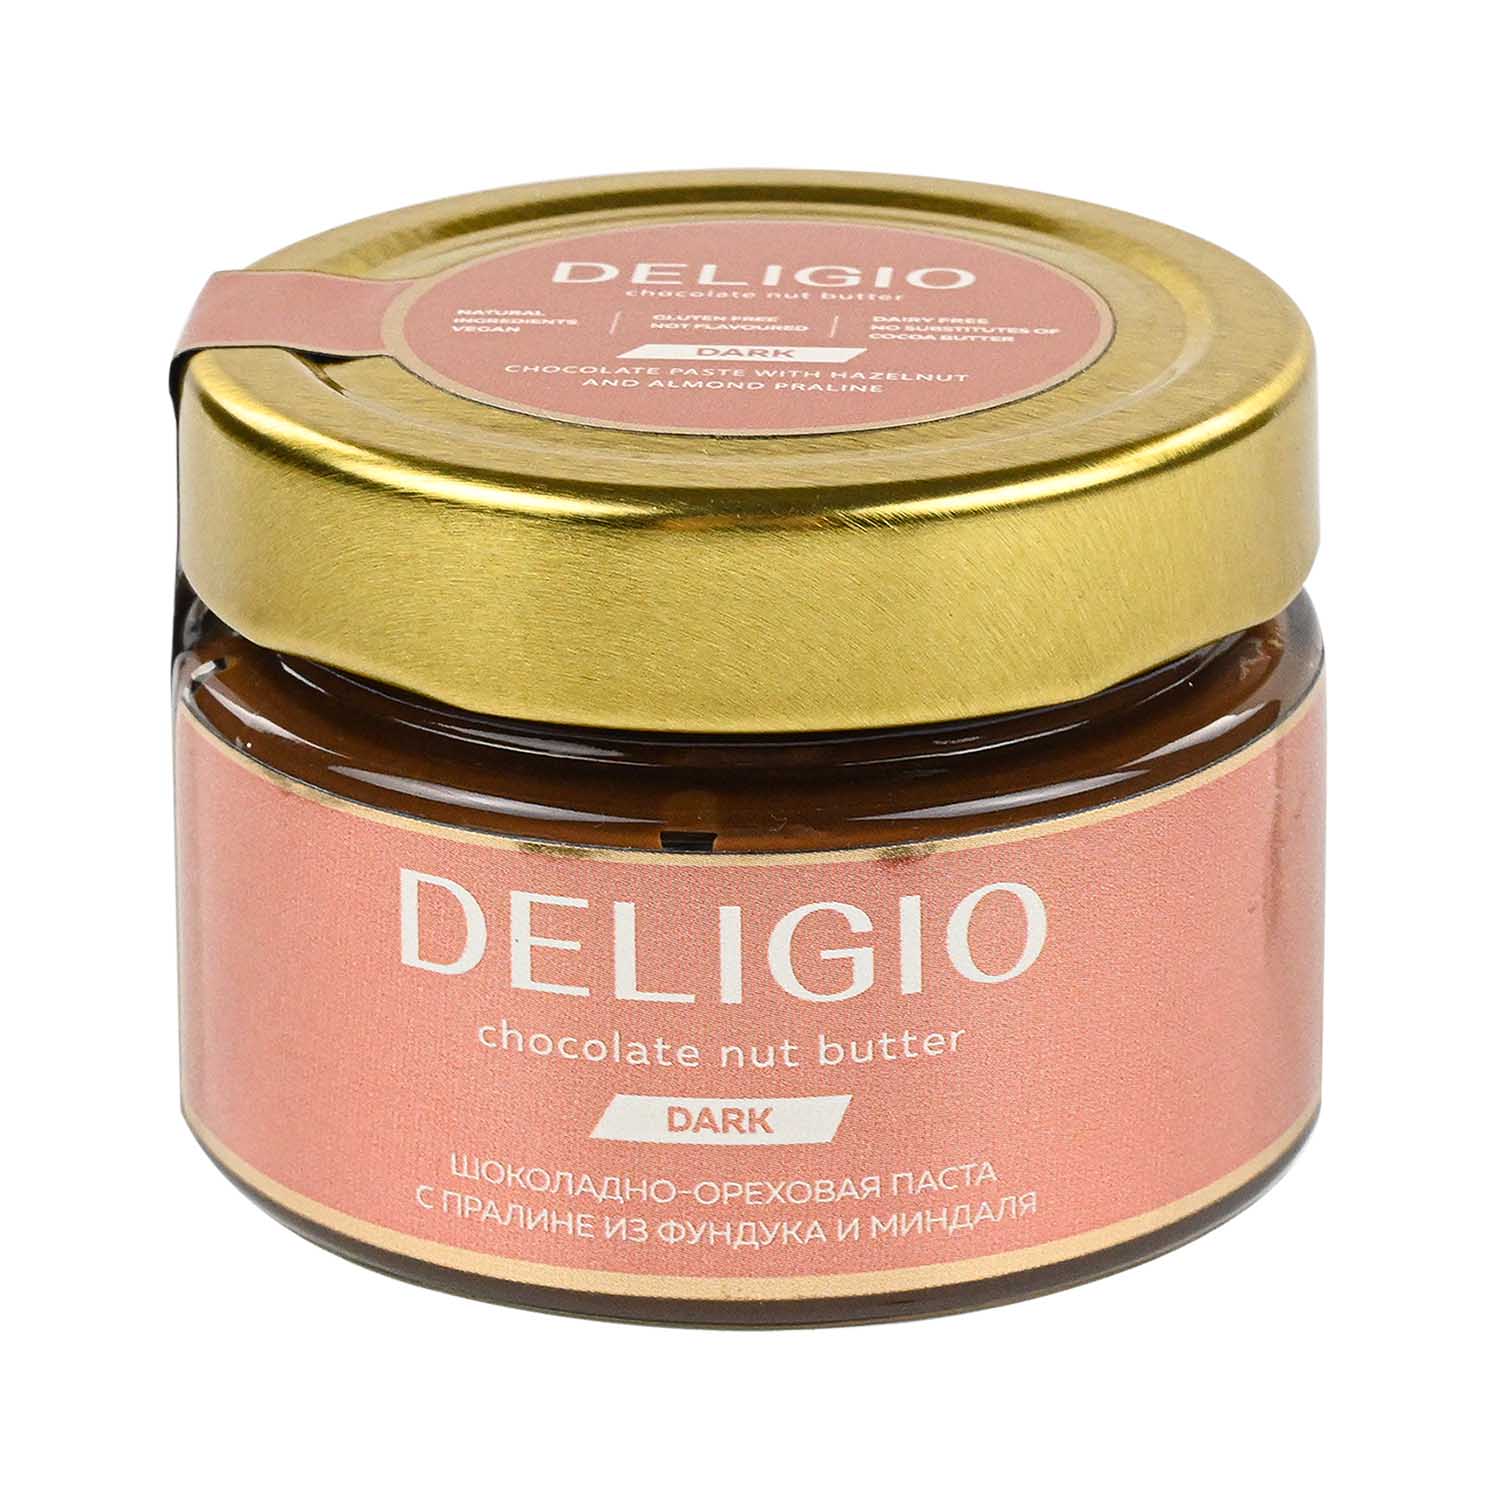 ПП-десерты на любой вкус от бренда DELIGIO